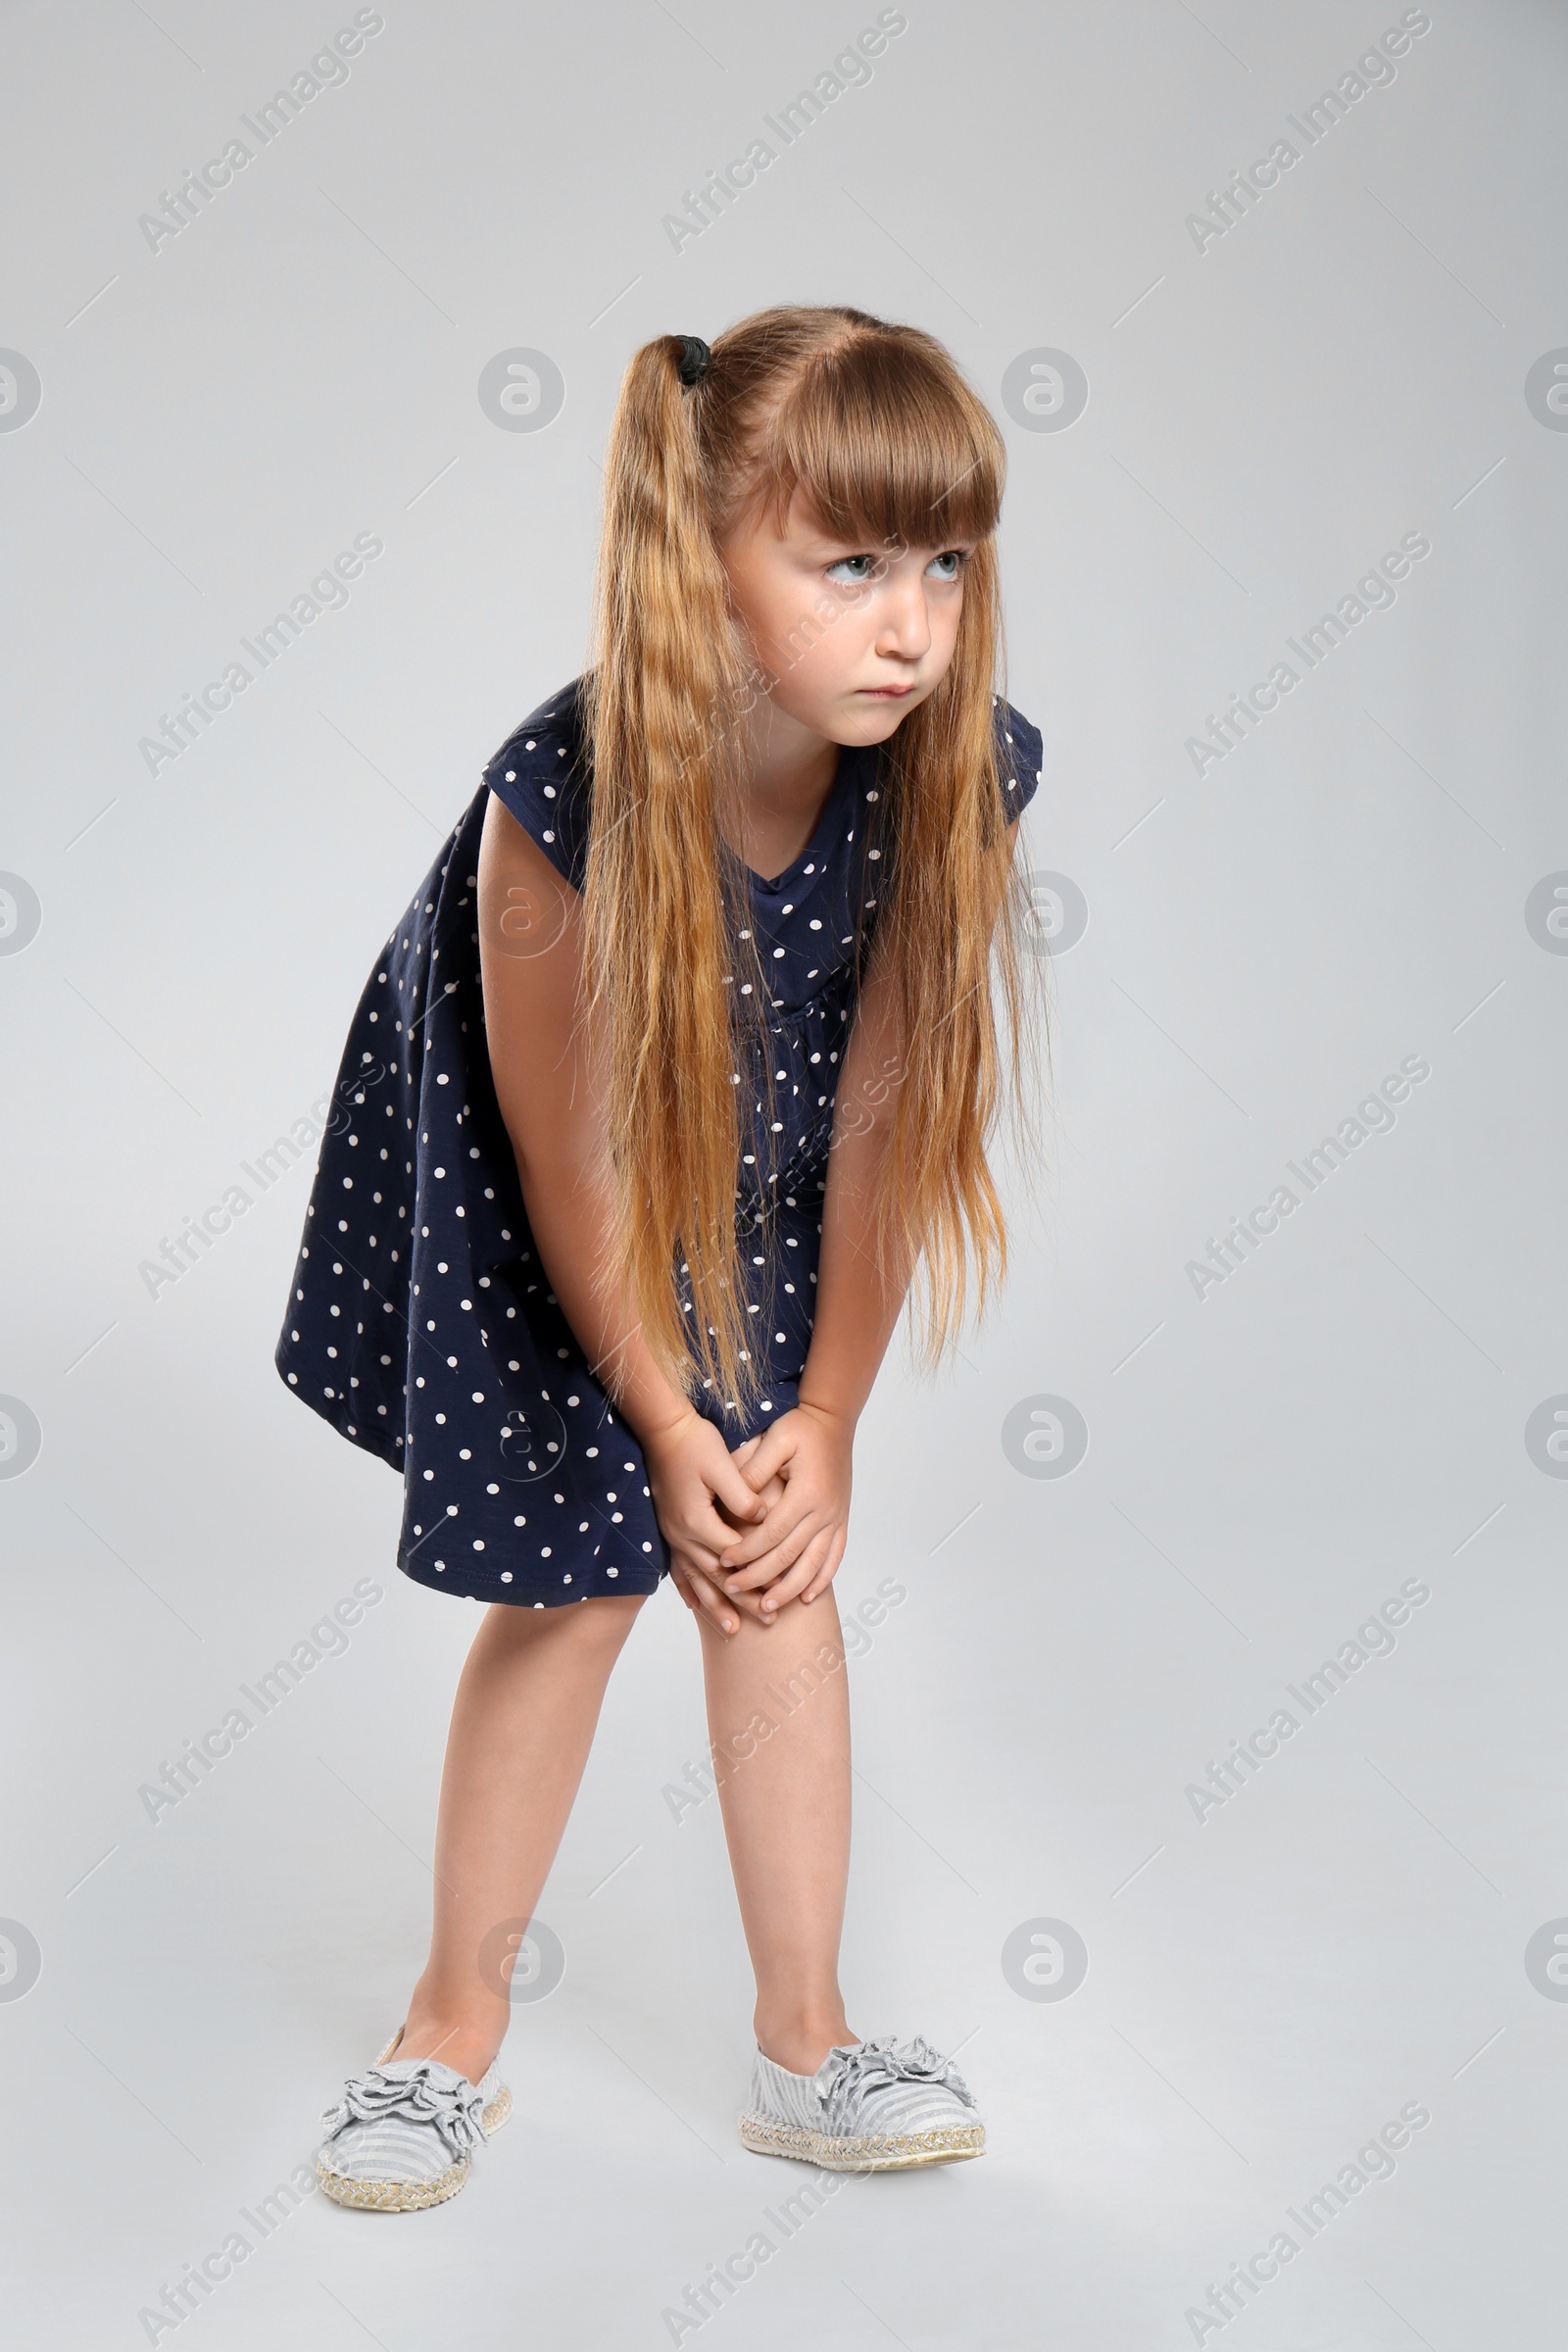 Photo of Full length portrait of little girl having knee problems on grey background